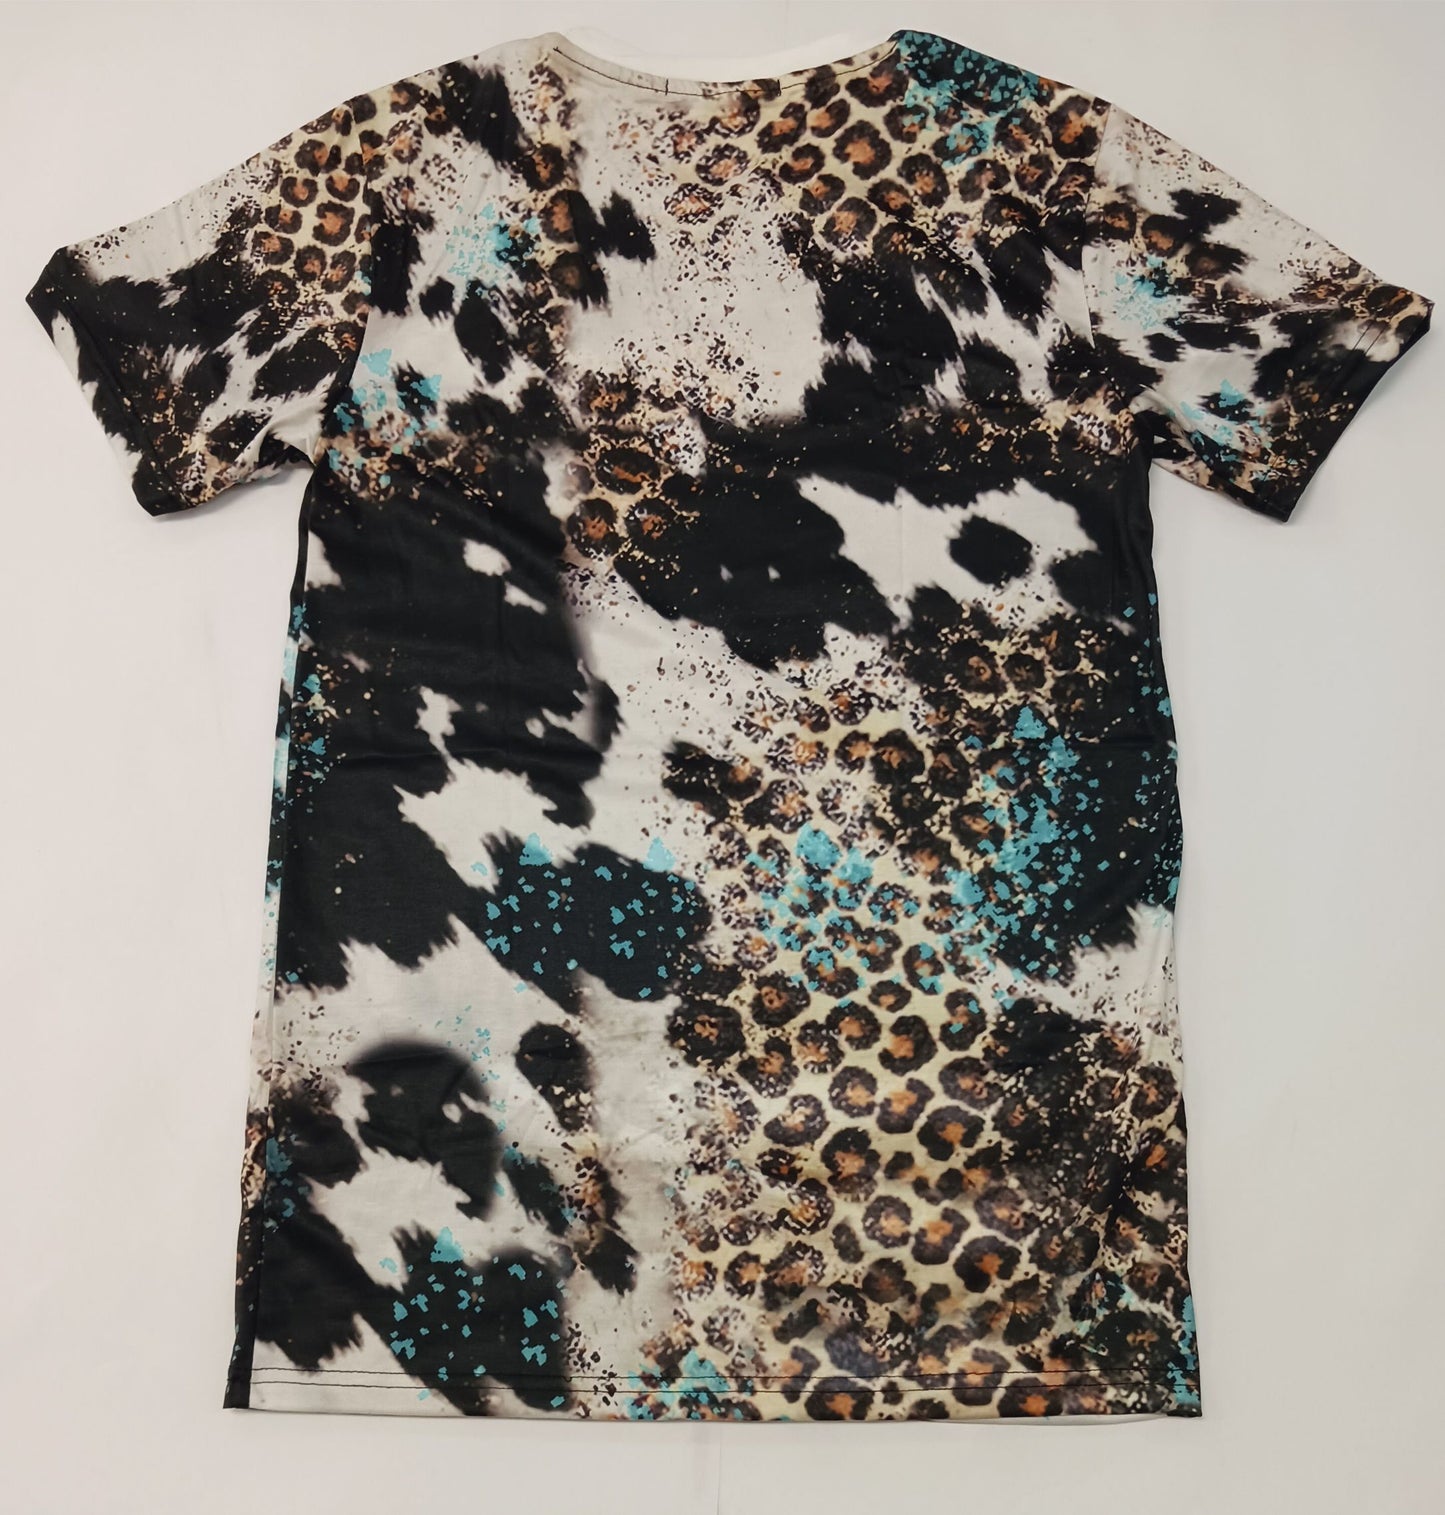 Youth T Shirt Cow Leopard - Read Description